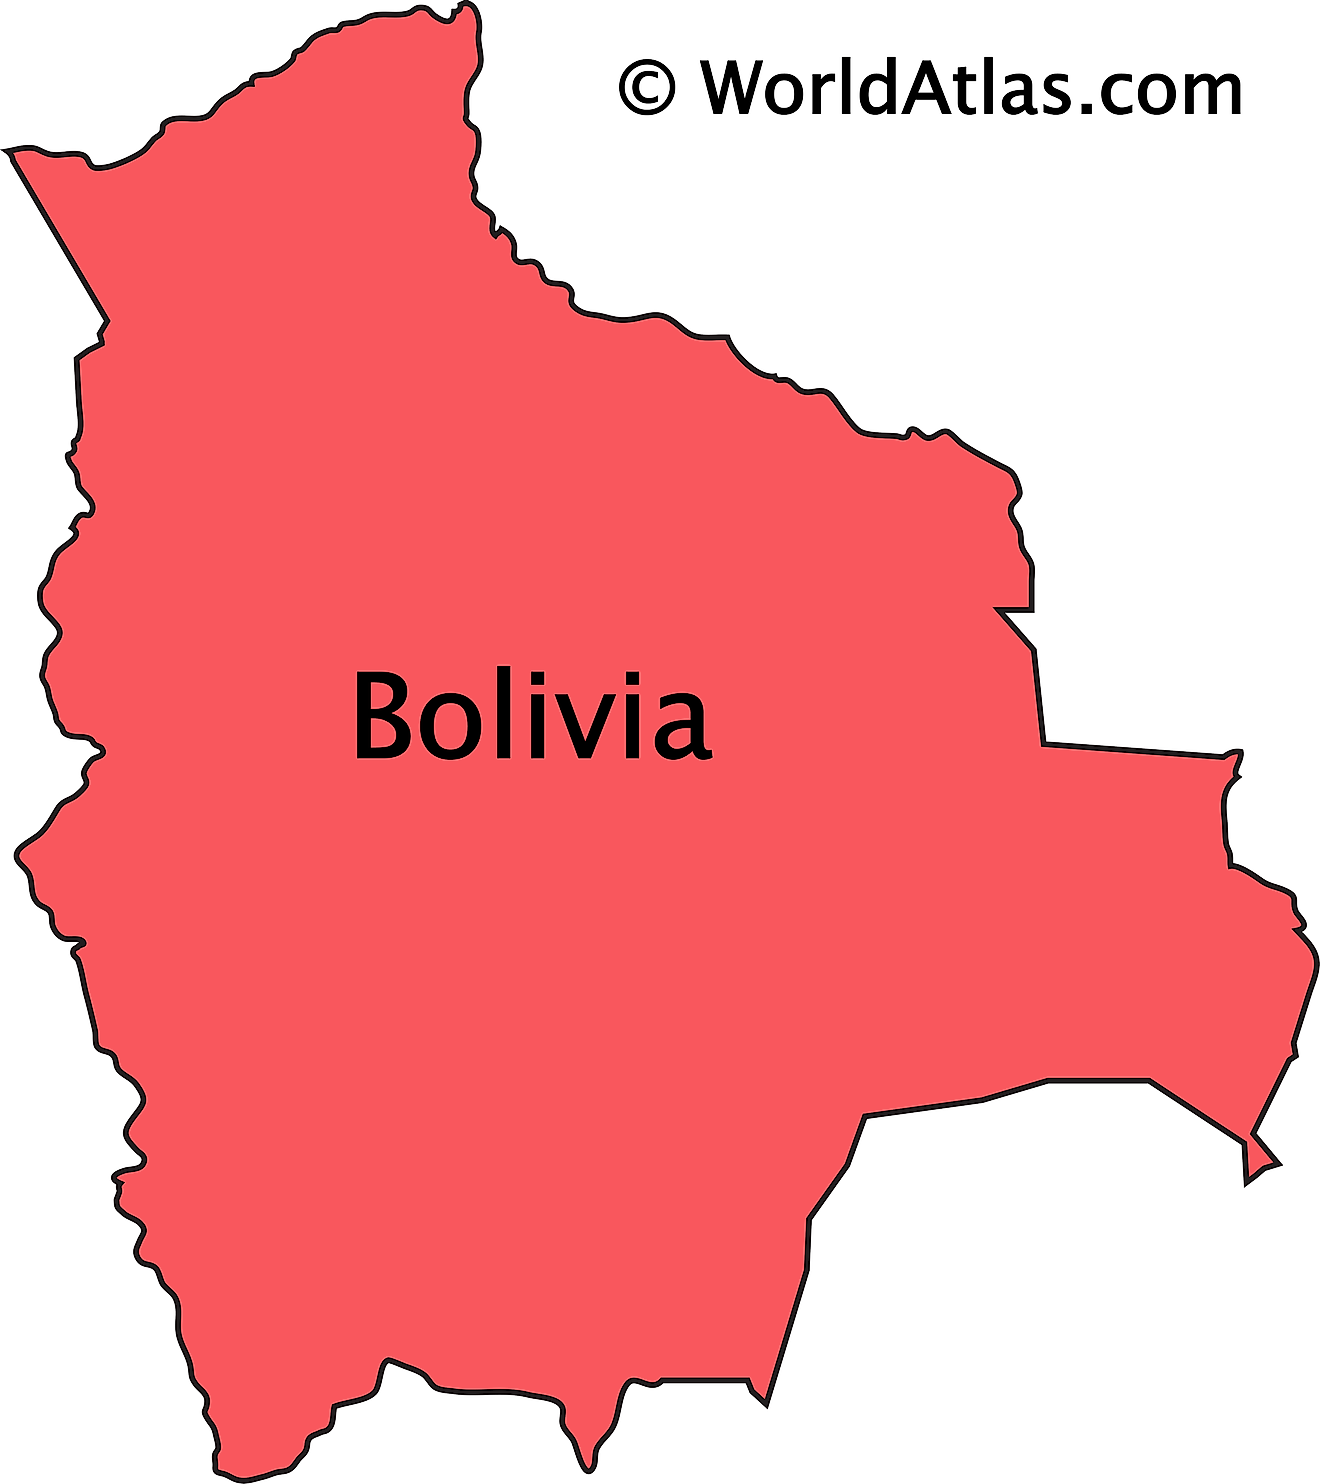 Bolivia Maps Printable Maps Of Bolivia For Download - vrogue.co